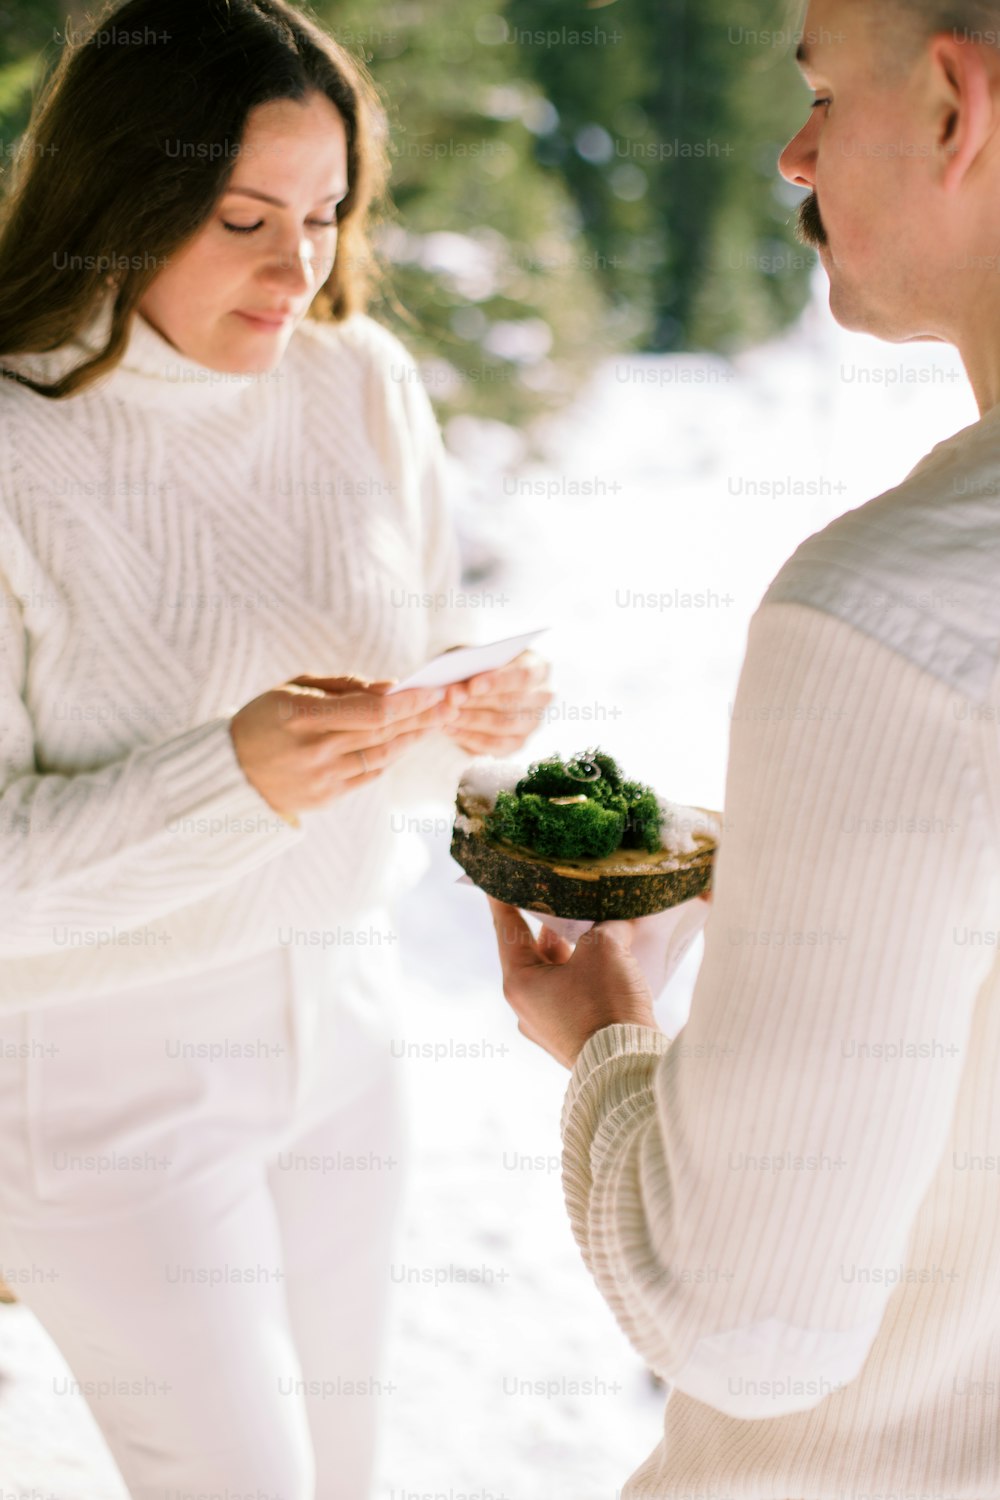 Un hombre sosteniendo un plato de comida junto a una mujer